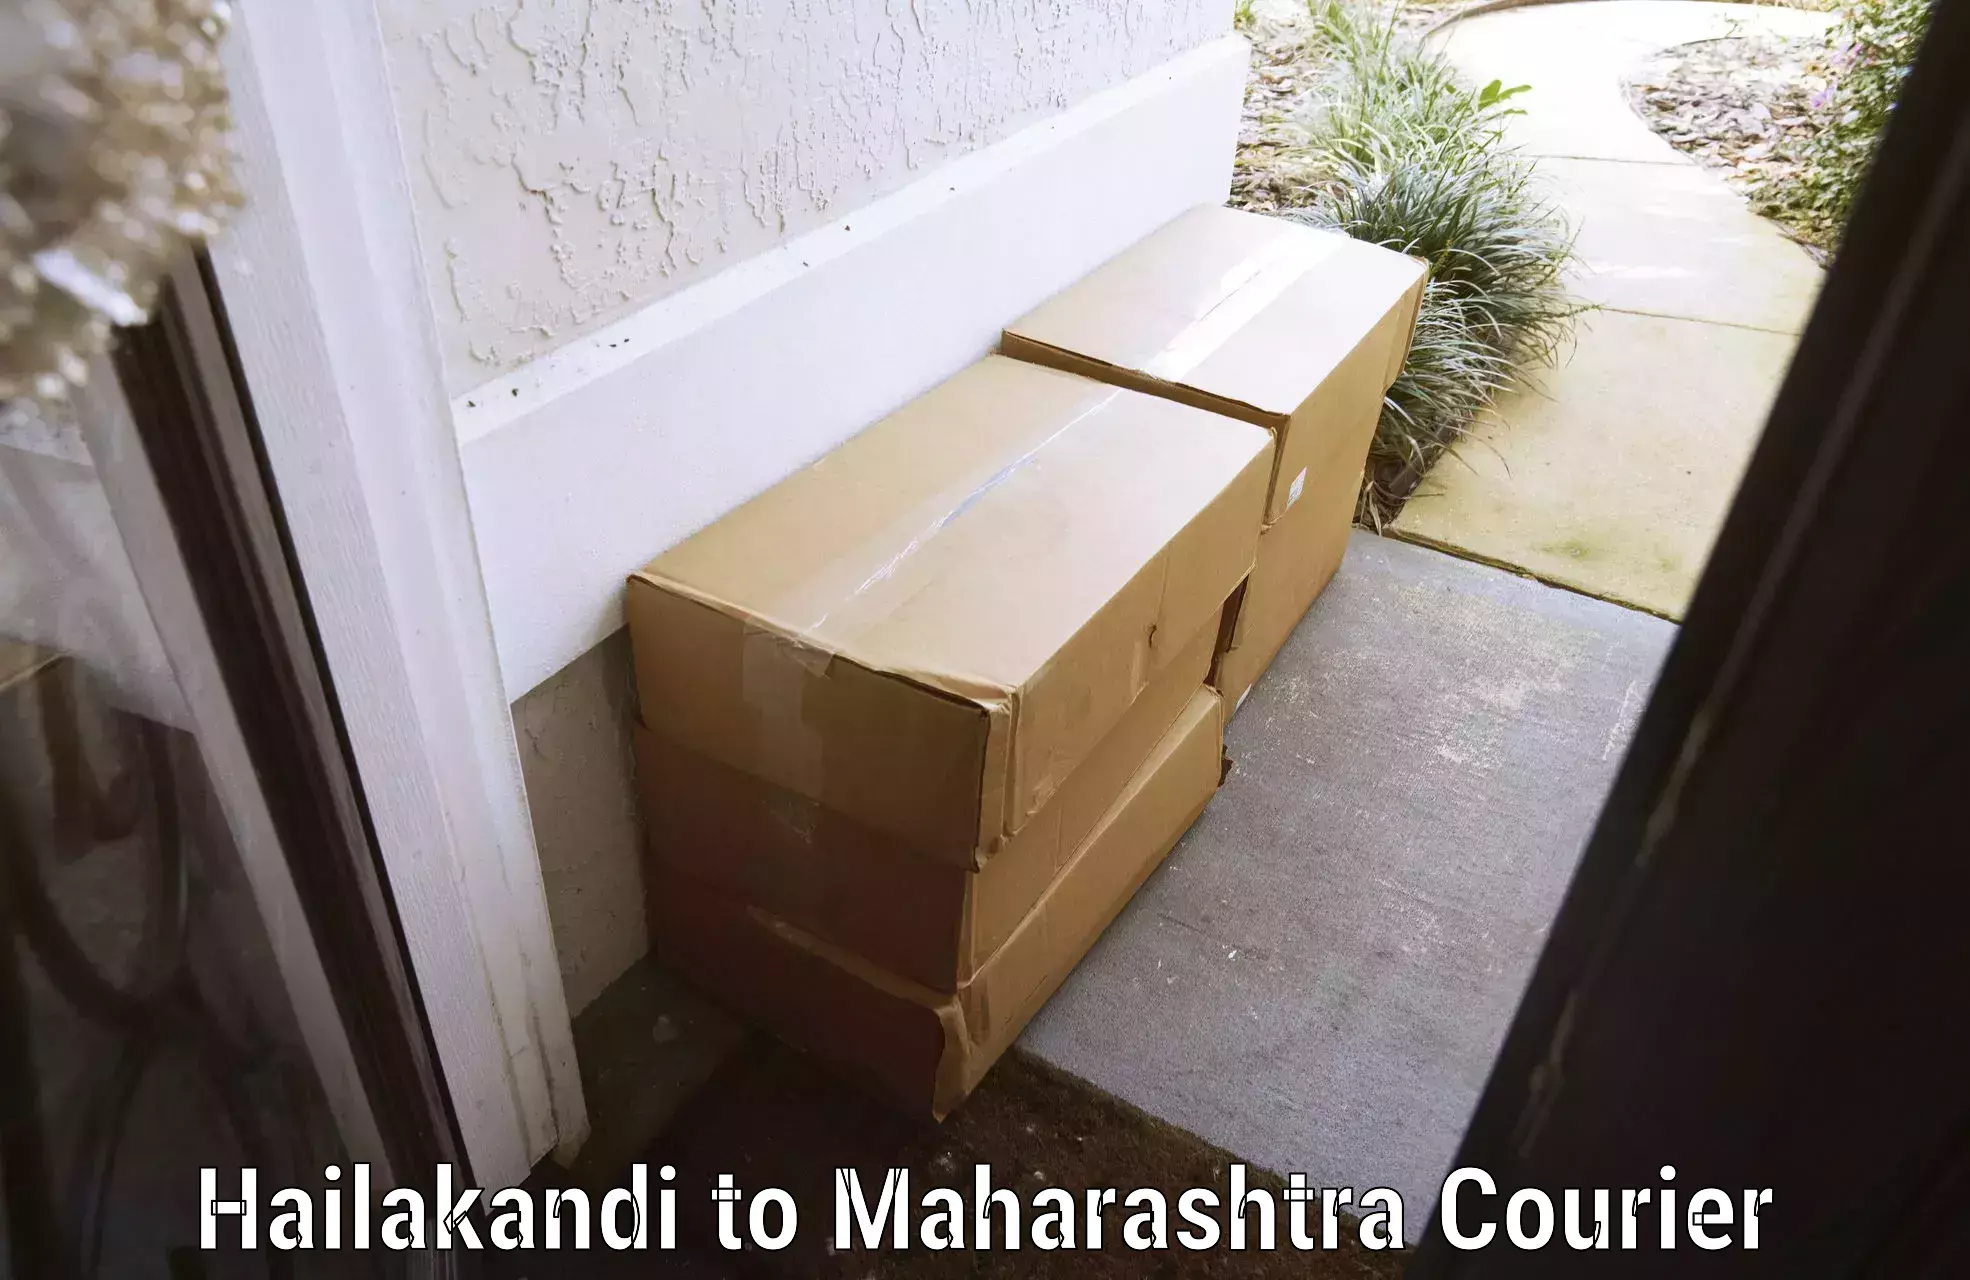 Automated luggage transport Hailakandi to Maharashtra